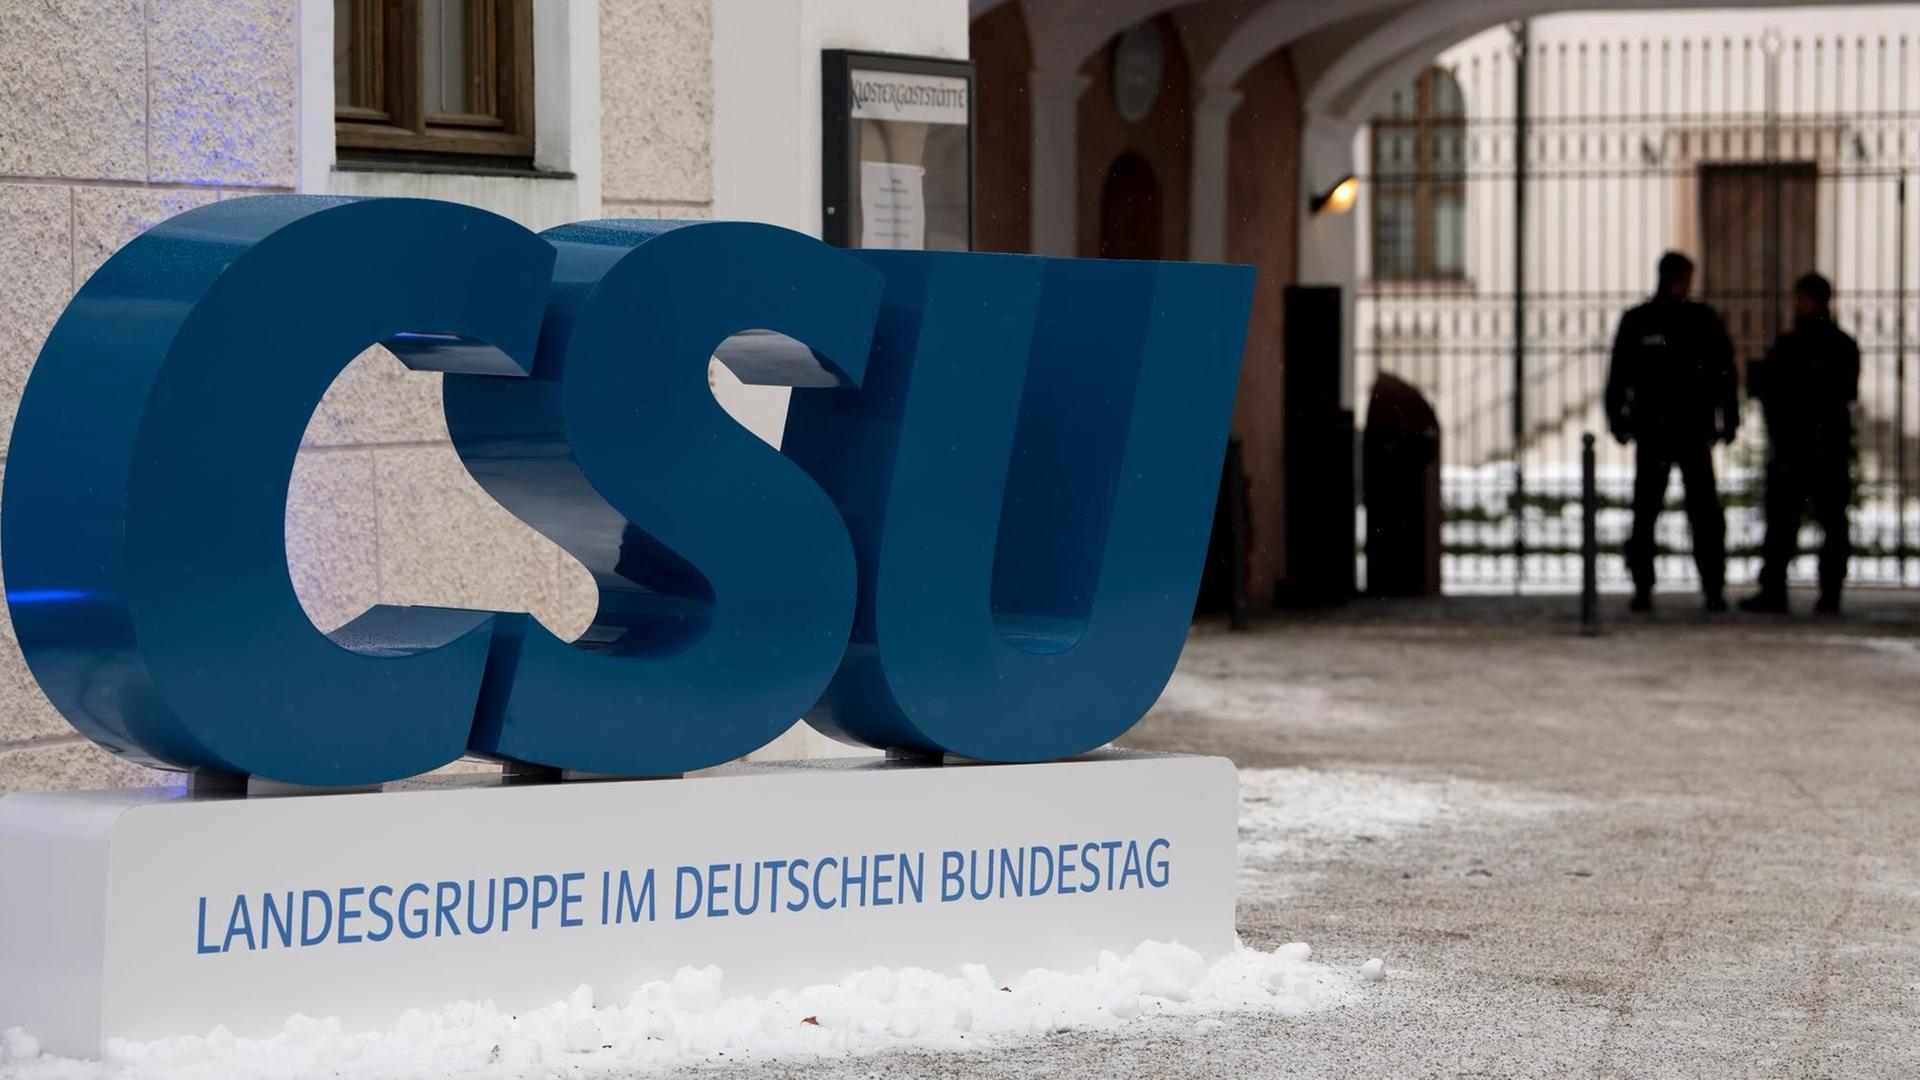  Im Kloster Seeon in Bayern findet die Klausurtagung der CSU-Landesgruppe statt